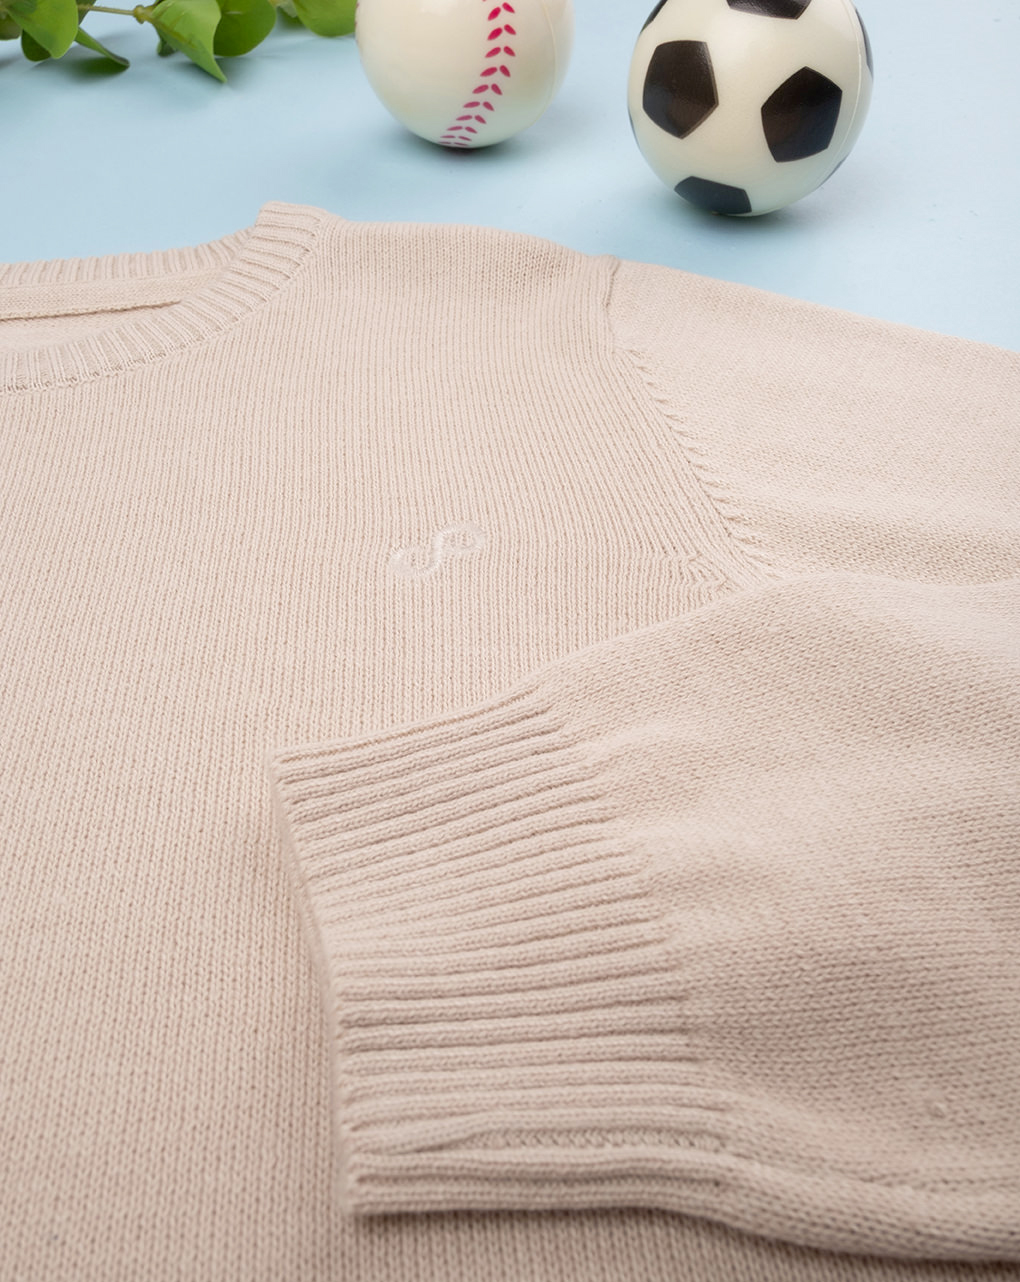 Camisola de tricot castanha bebé - Prénatal